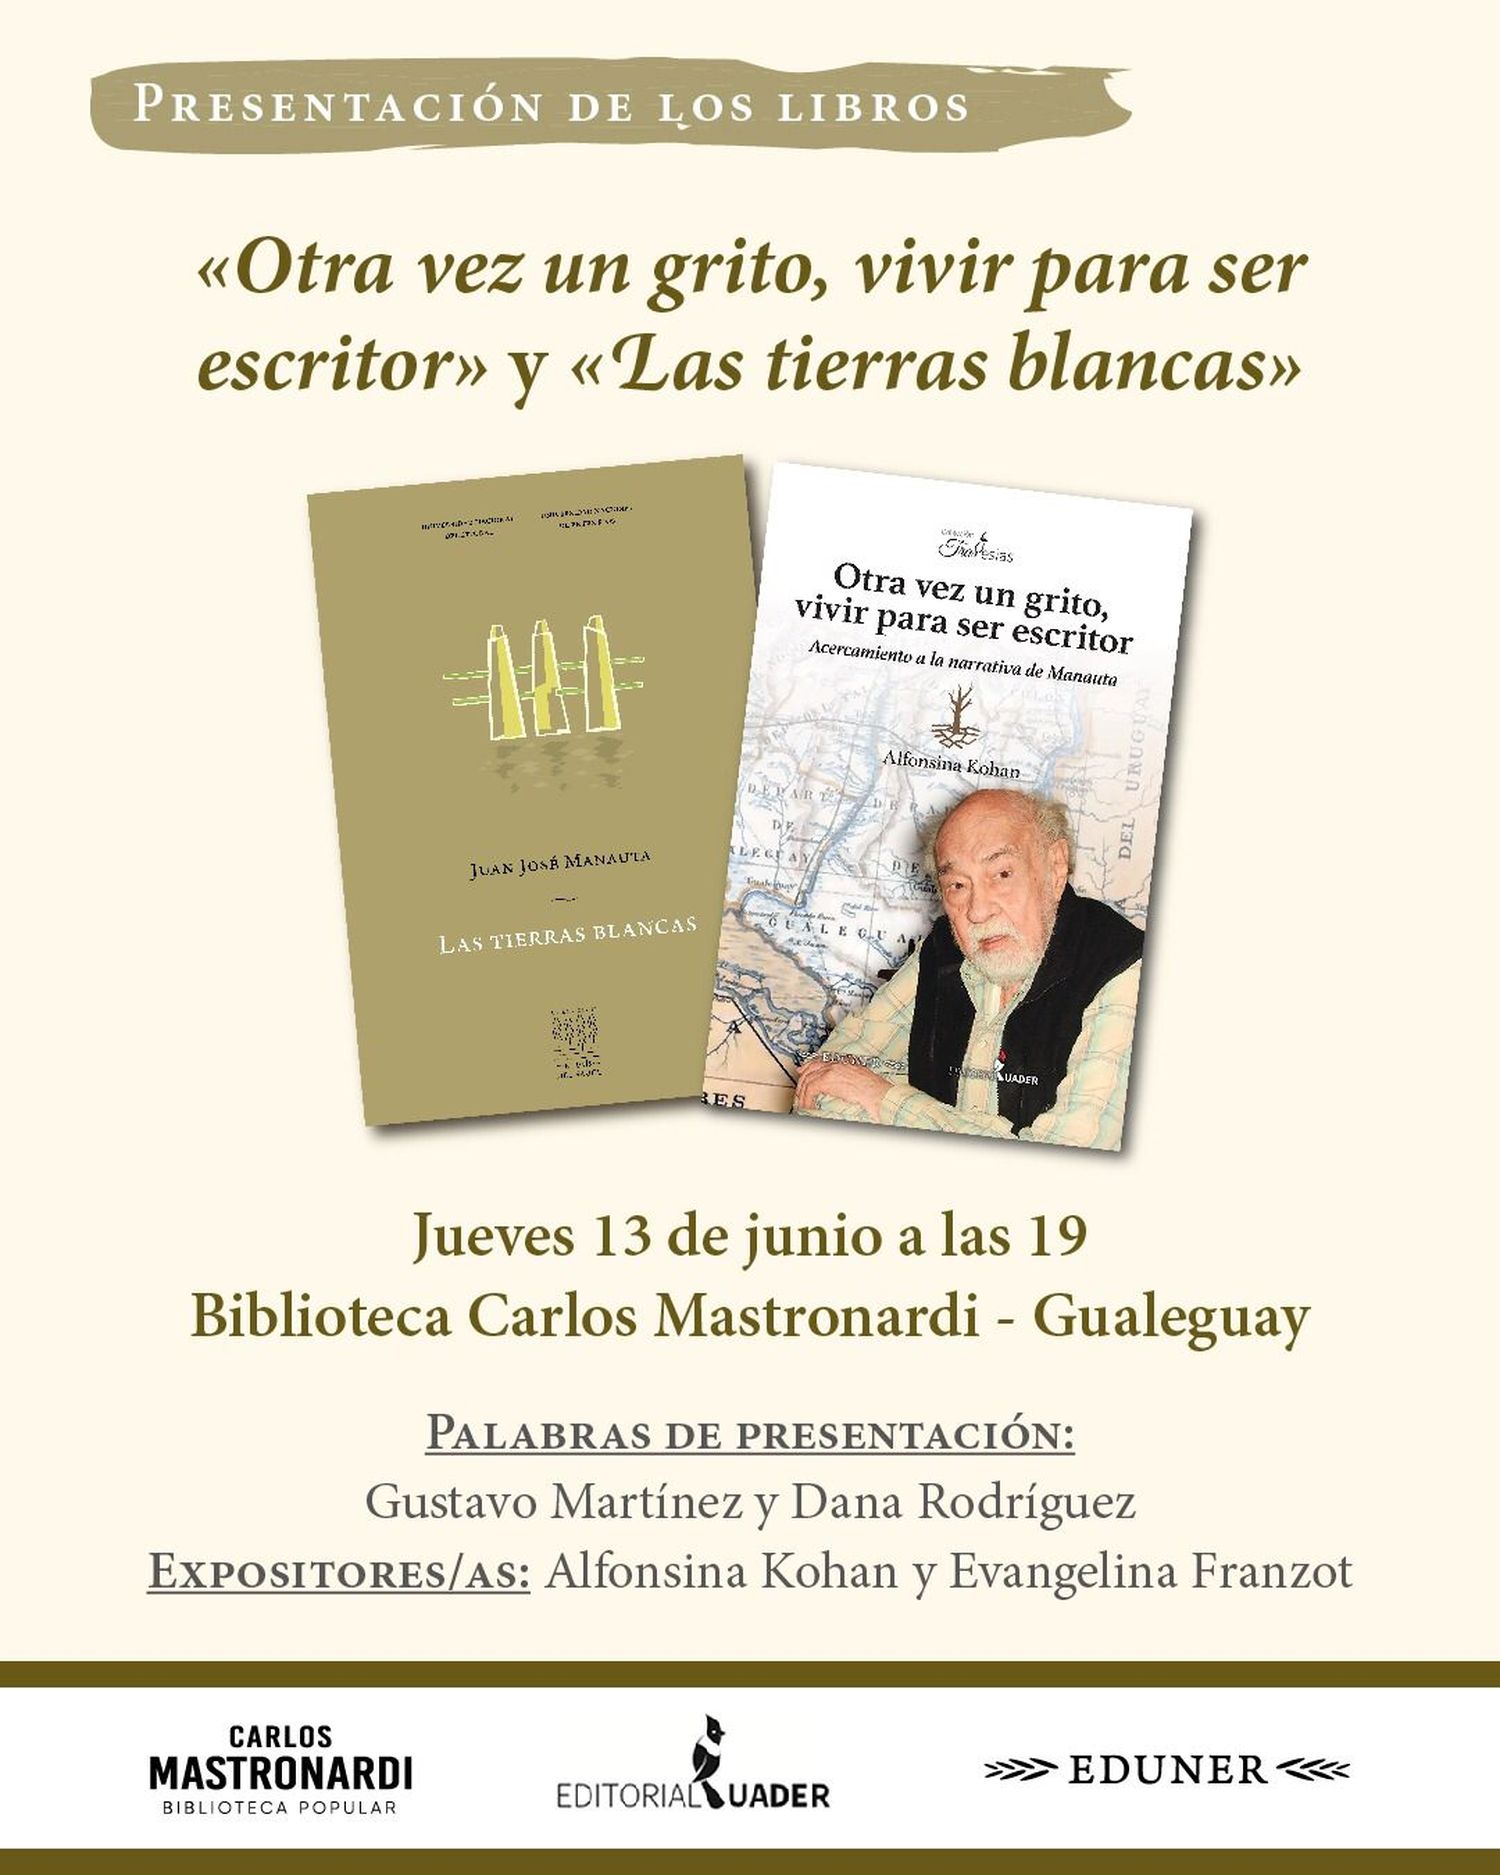 Presentarán dos libros de “Chacho” Manauta